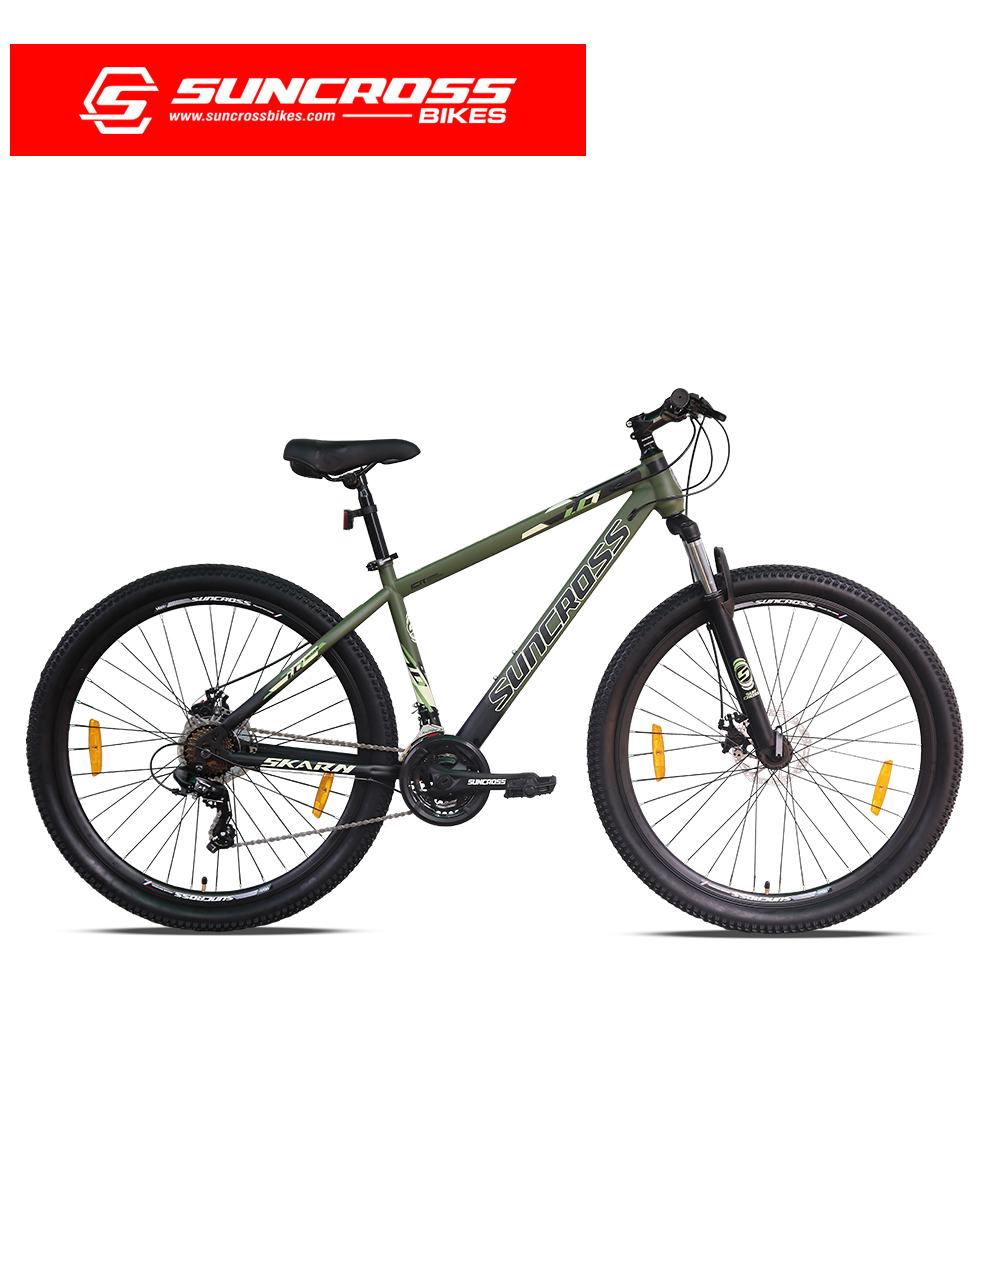 SKARN 1.0 M/S Bike Shop Online | Buy SUNCROSS. Bike | MTB Cycle | Bicycle  Store in India.